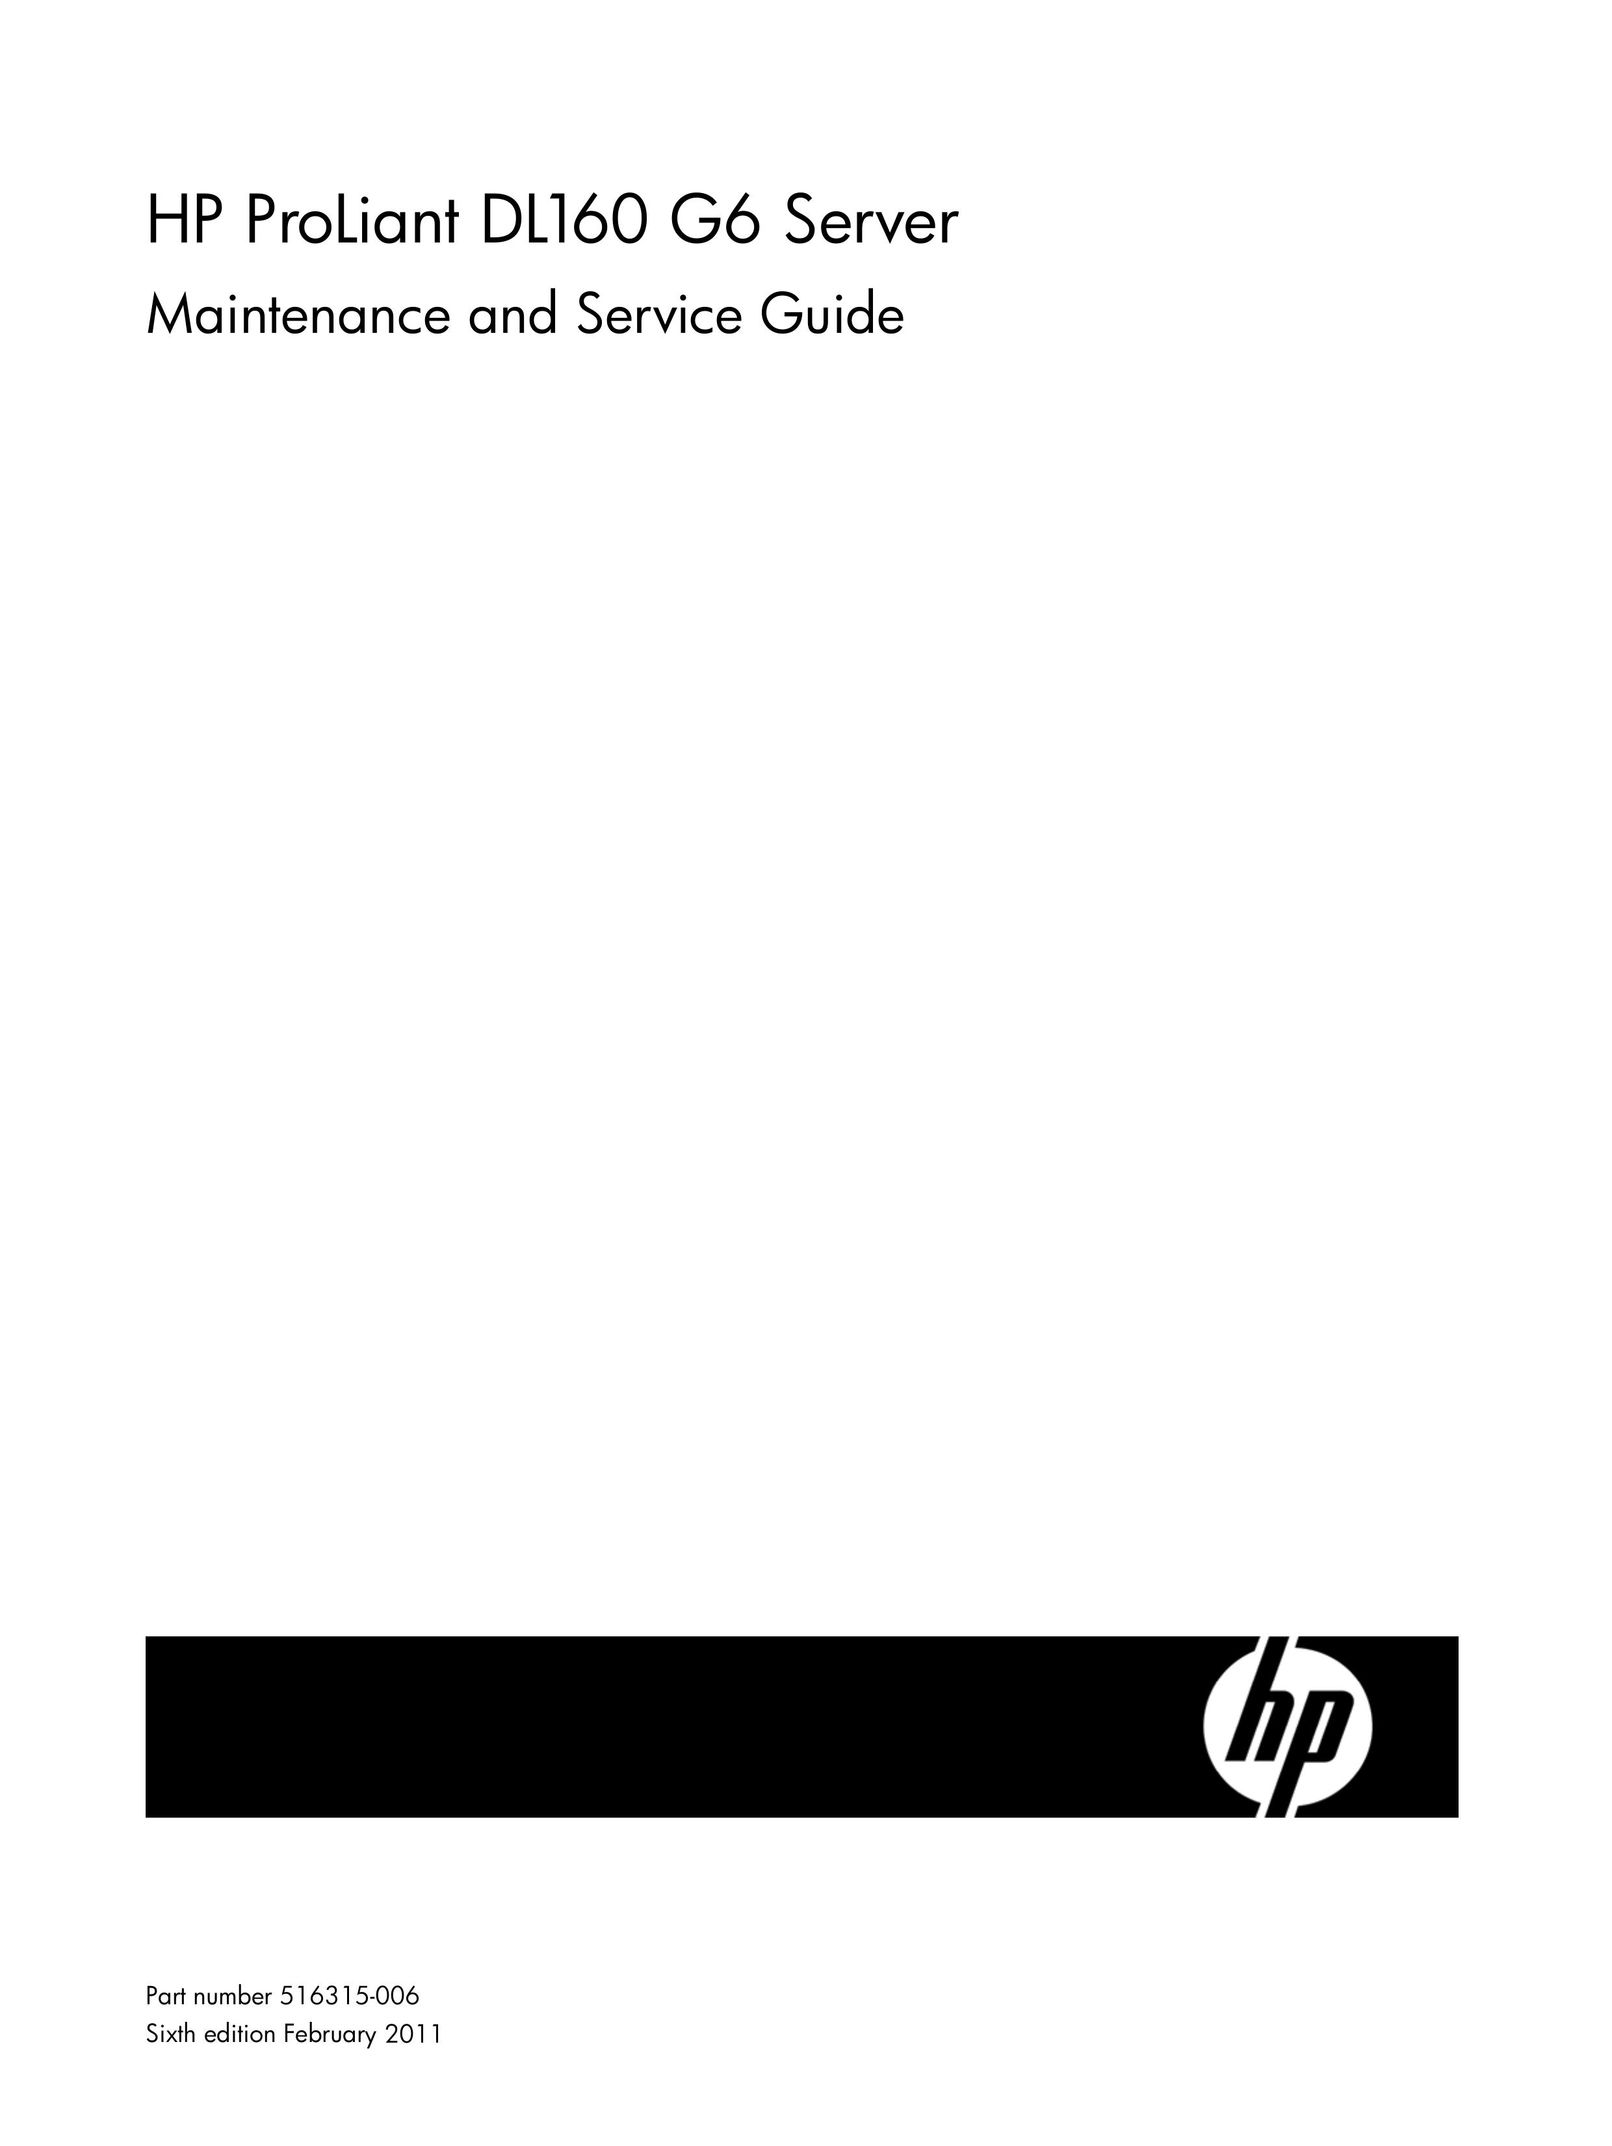 HP (Hewlett-Packard) 637235-001 Server User Manual